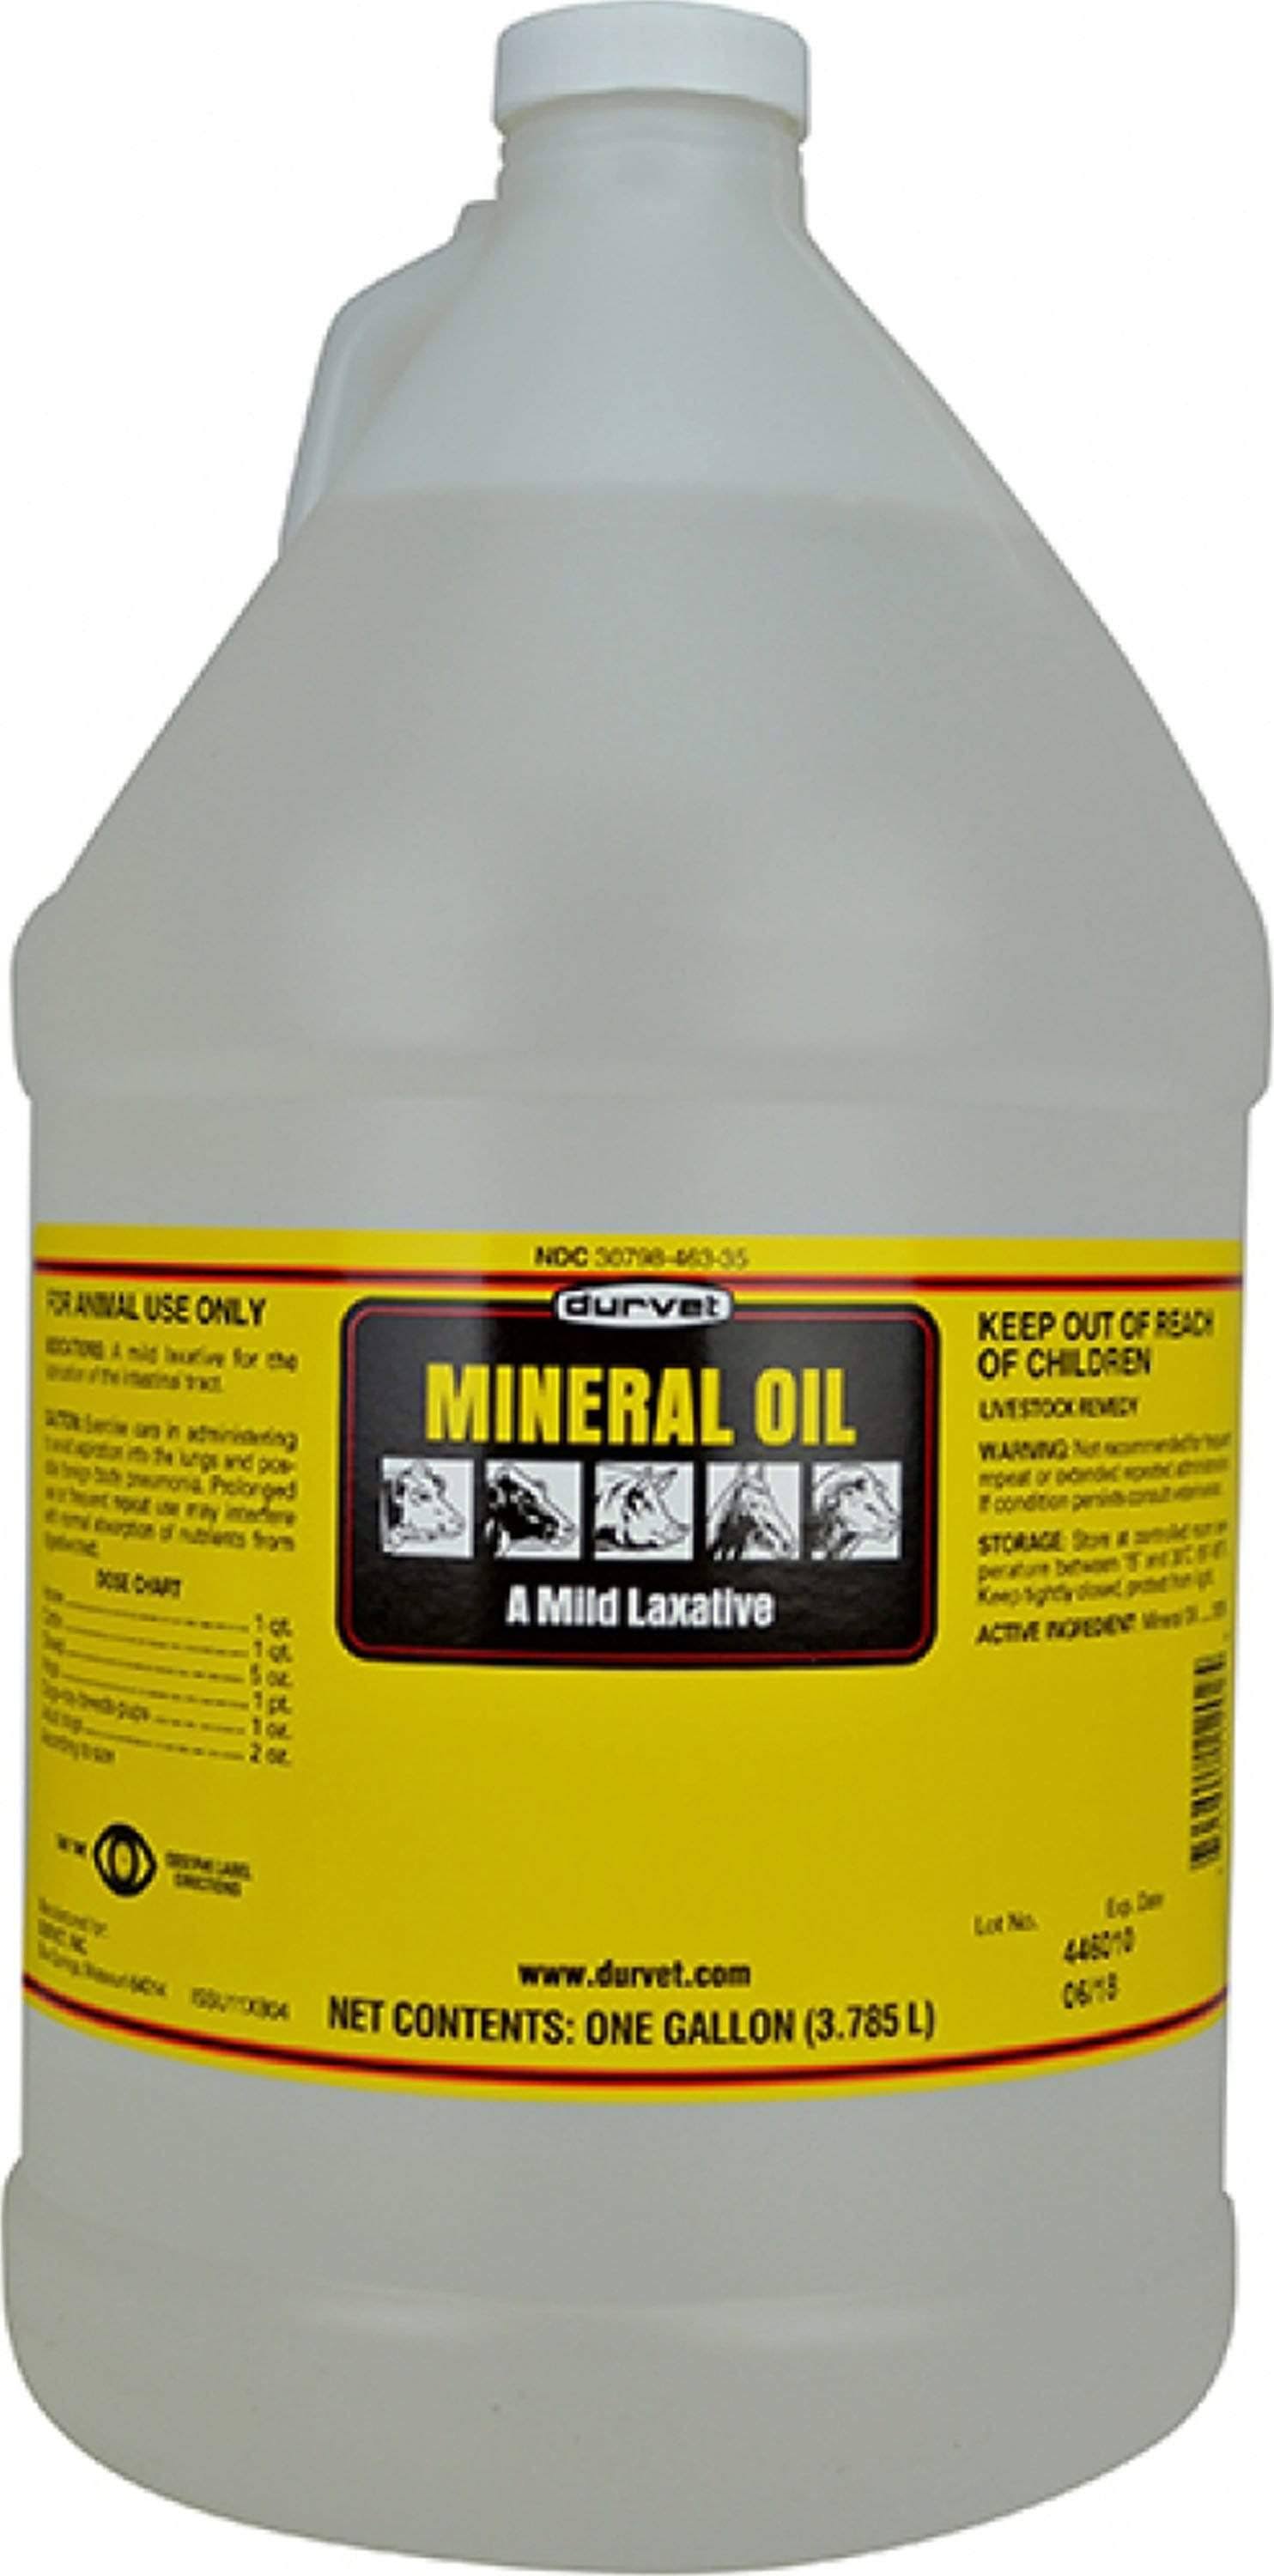 Durvet Animal Mineral Oil - 1 Gallon